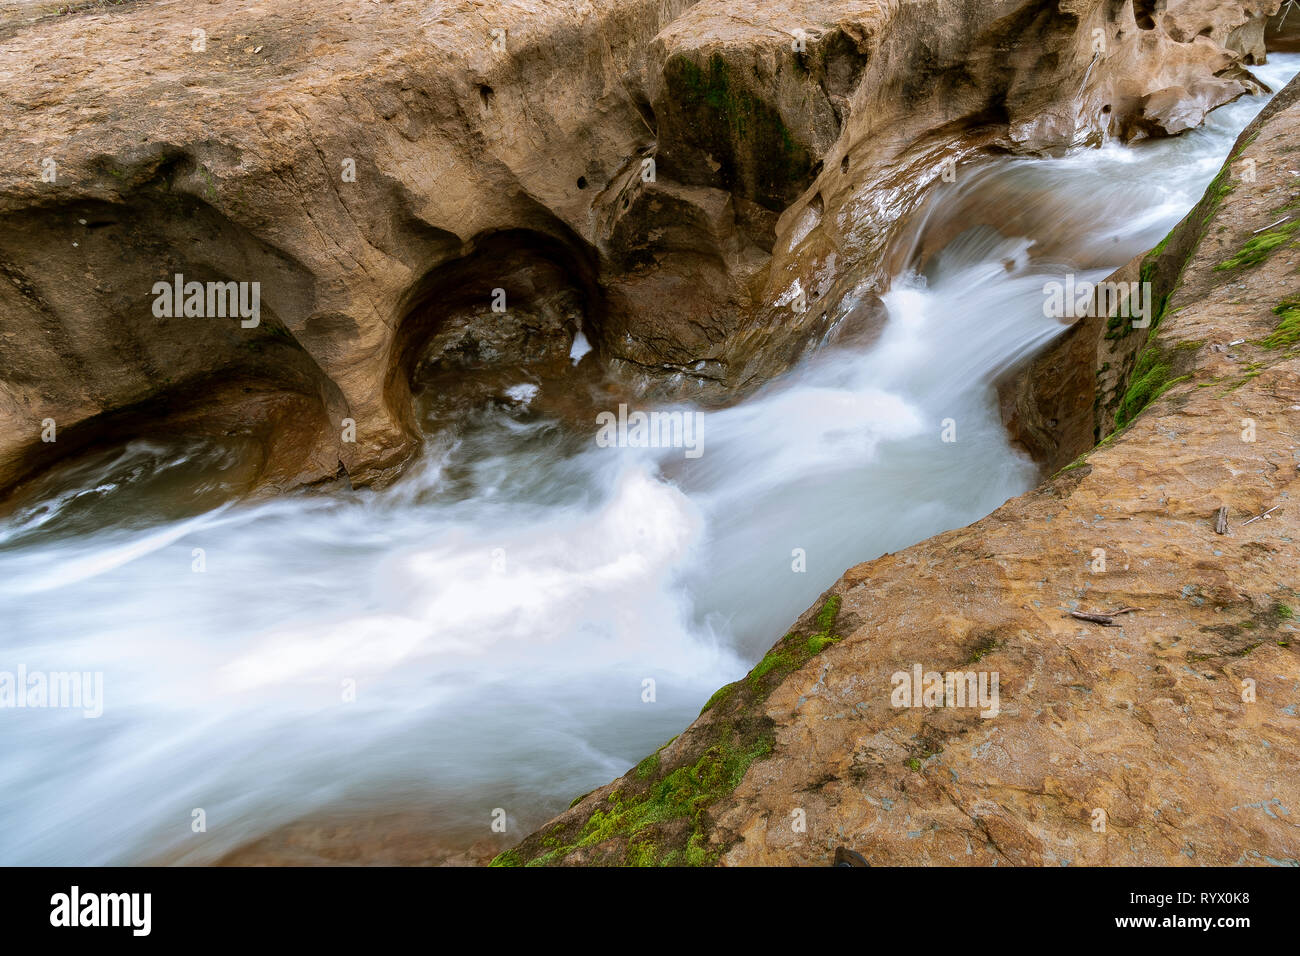 Das Wasser fließt durch einen kleinen Sandstein Slot Canyon in Südkalifornien. Starke Strömung von Wasser nach den letzten Frühling Regenschauer. Stockfoto